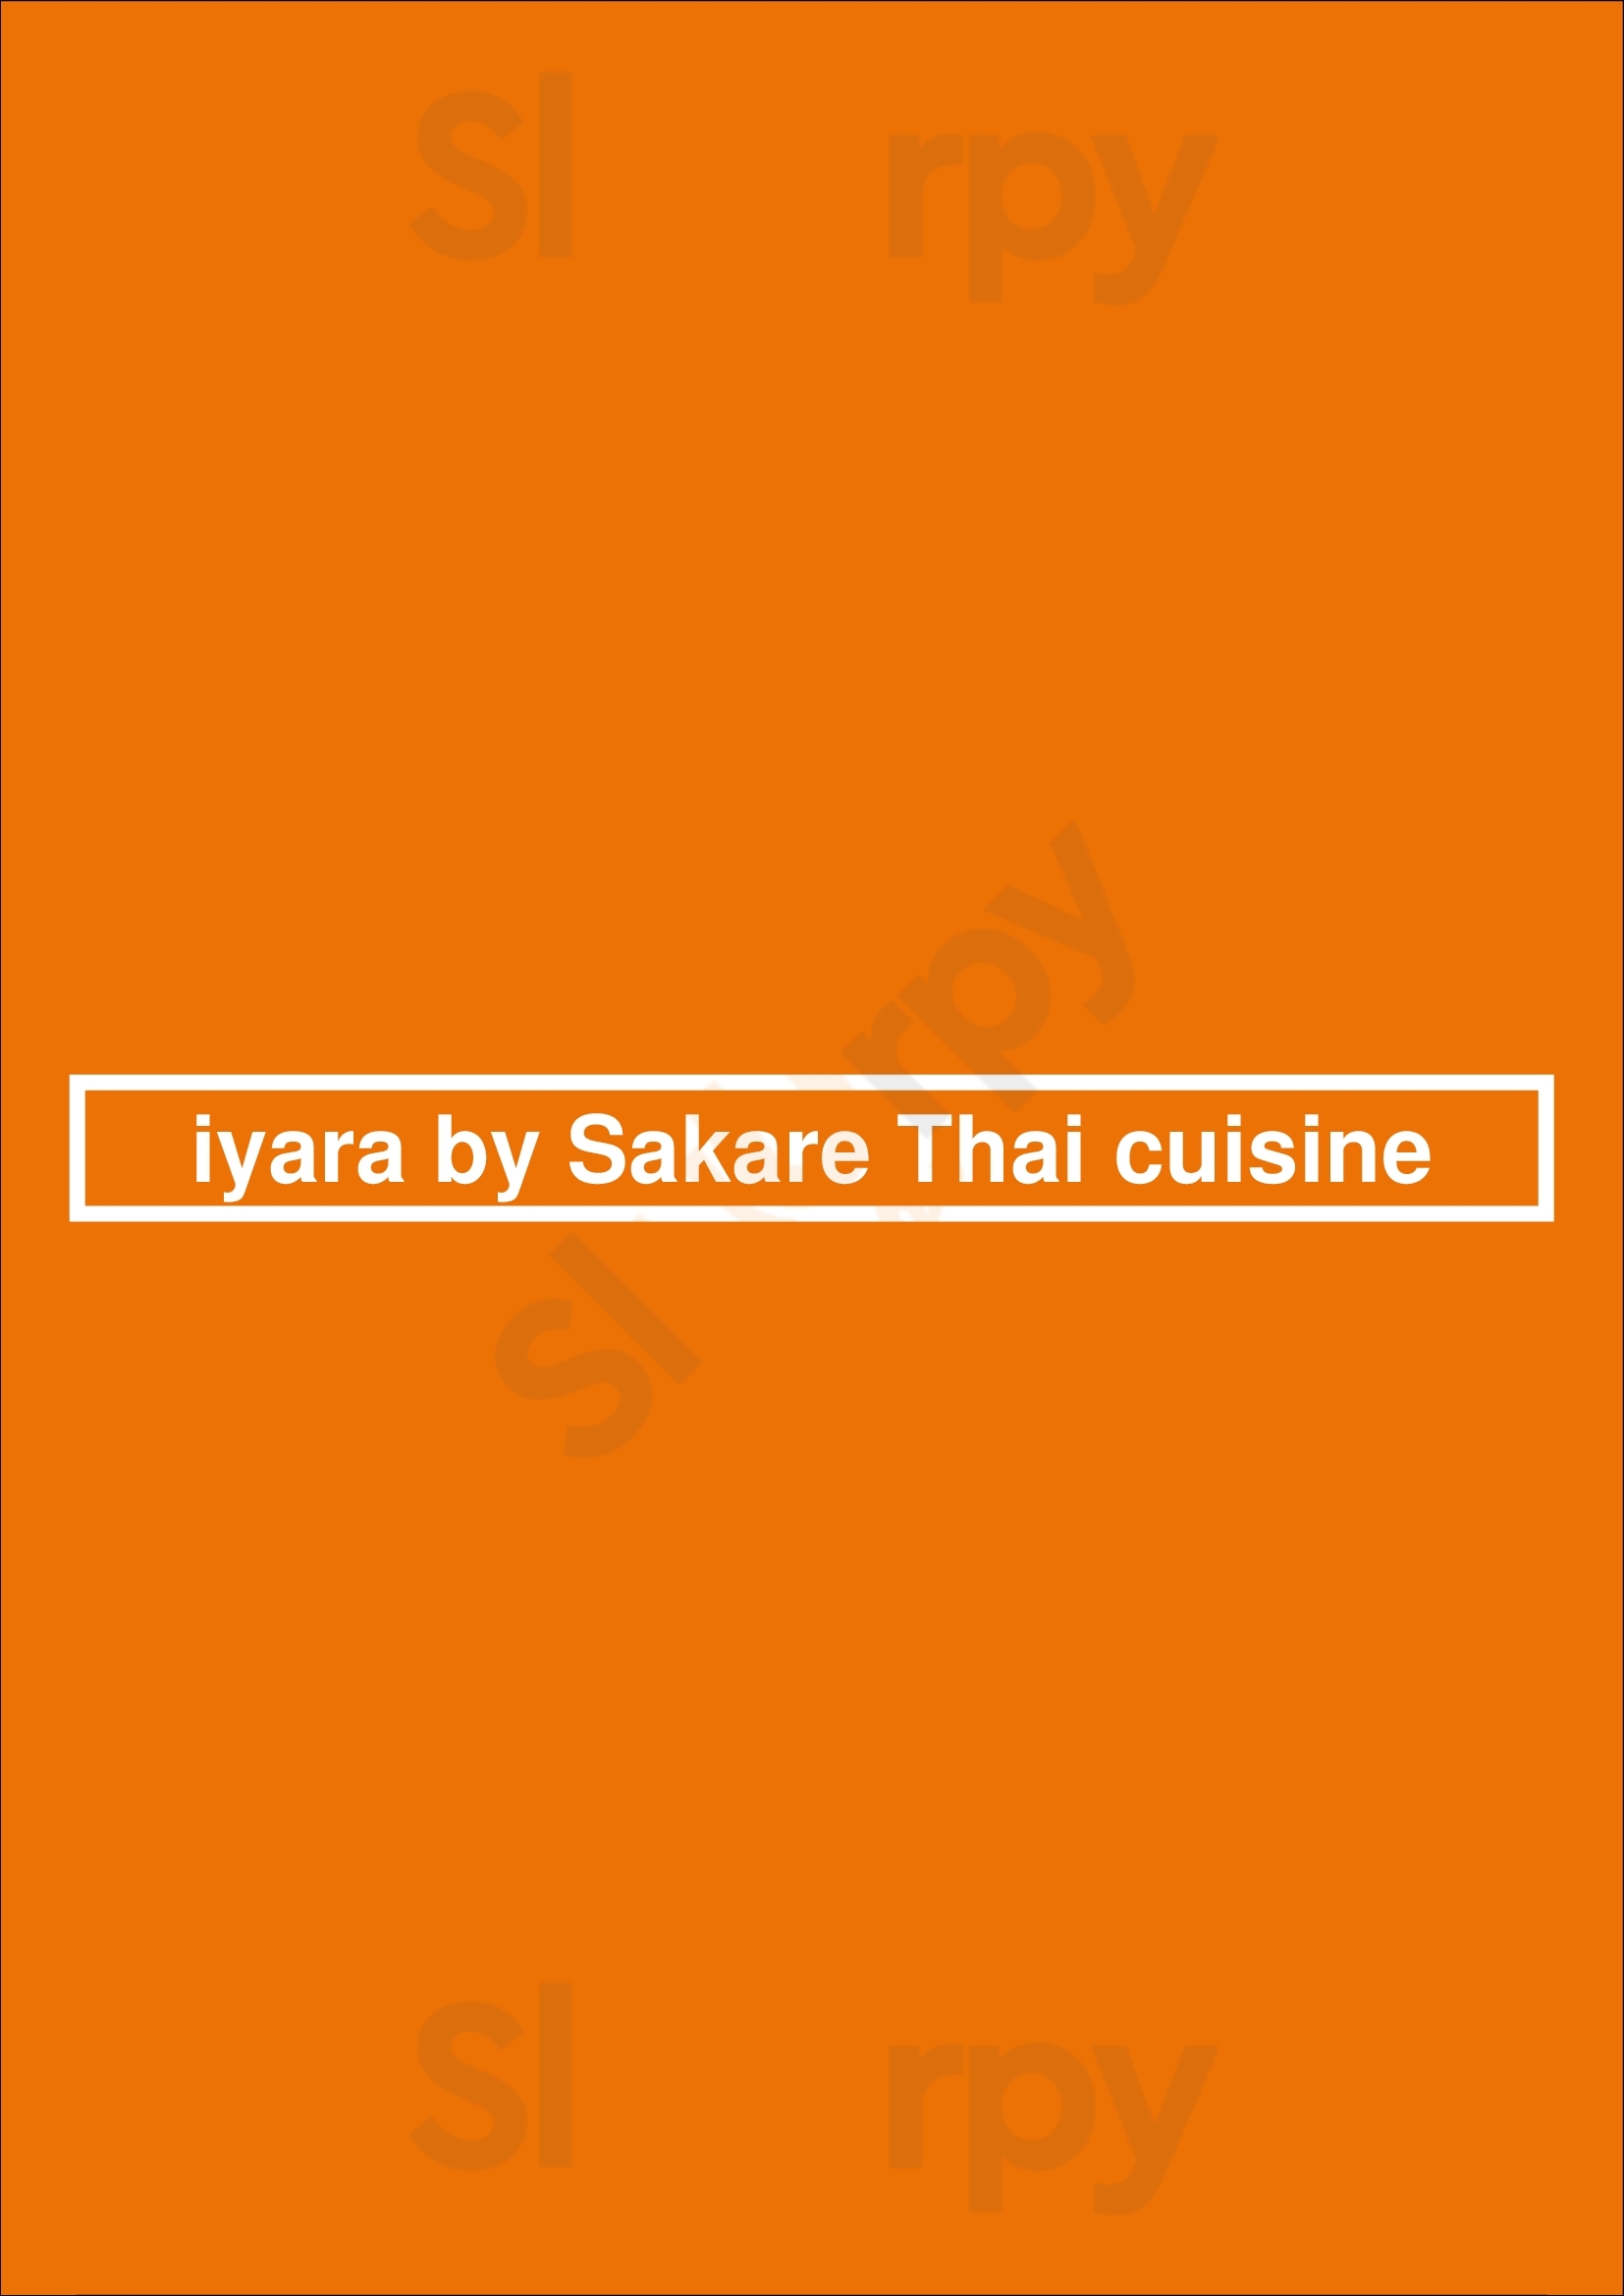 Iyara By Sakare Thai Cuisine Cairns Menu - 1